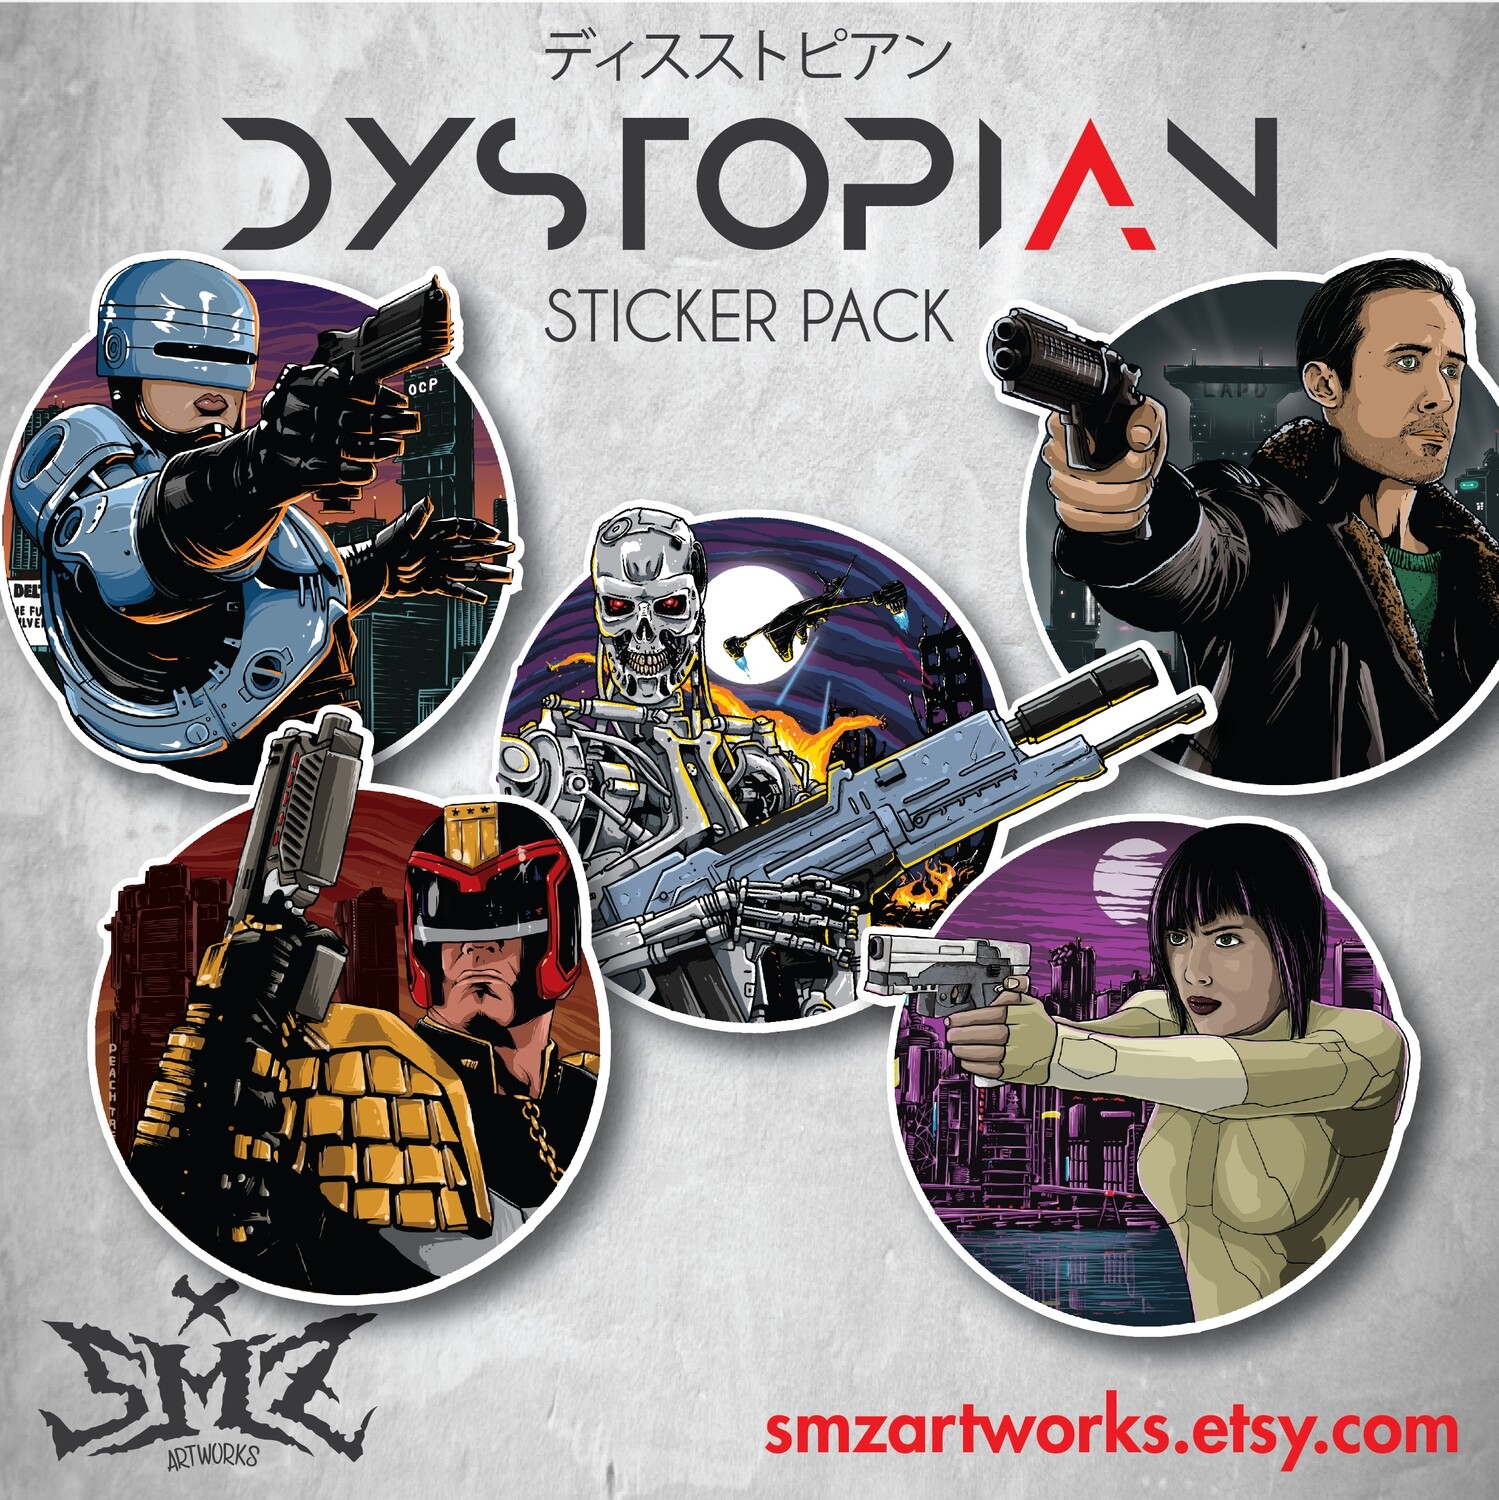 Dystopian Sticker Pack